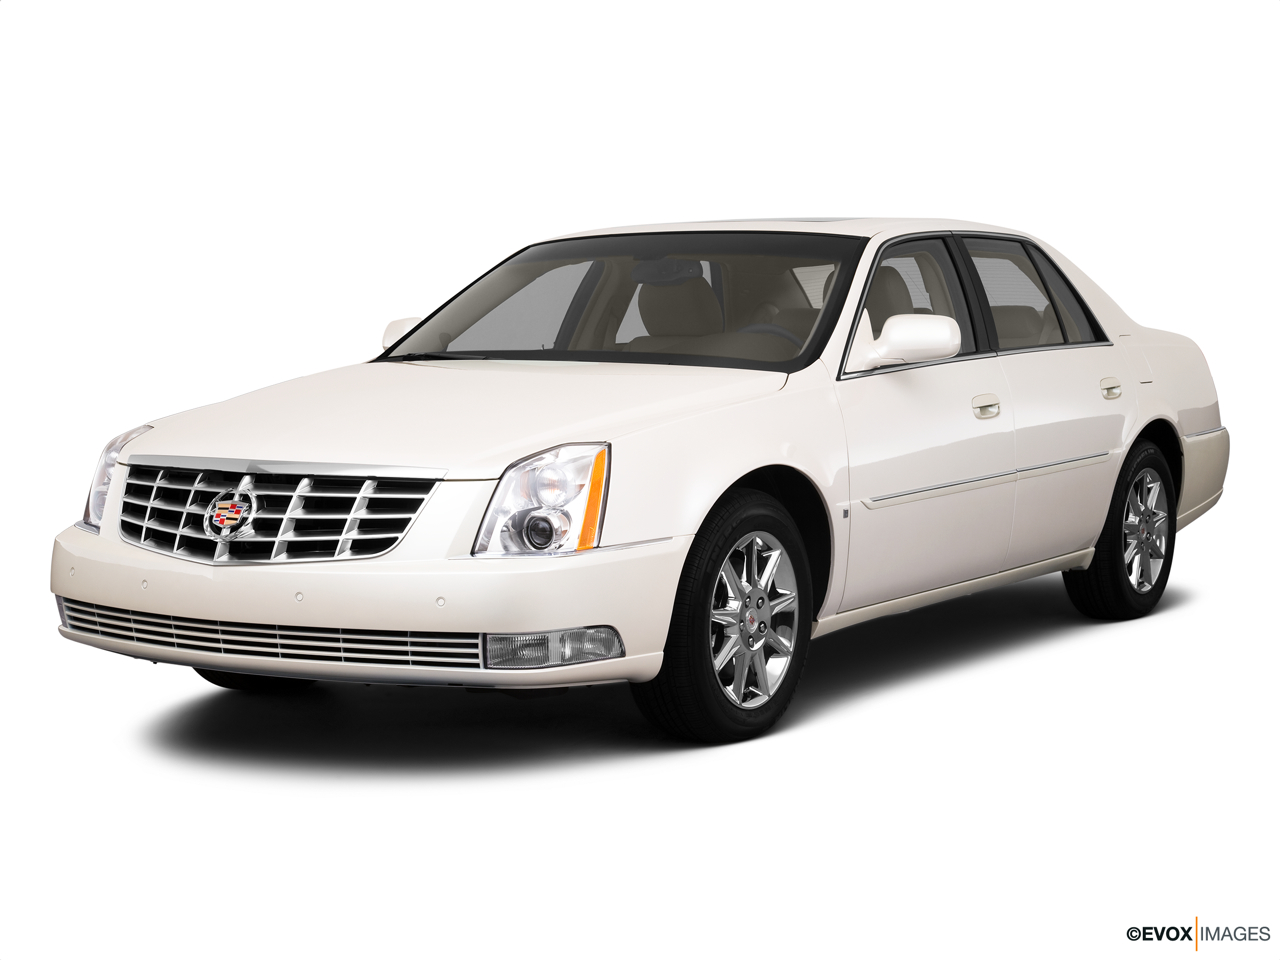 2010 Cadillac DTS Luxury Collection 114 - no description